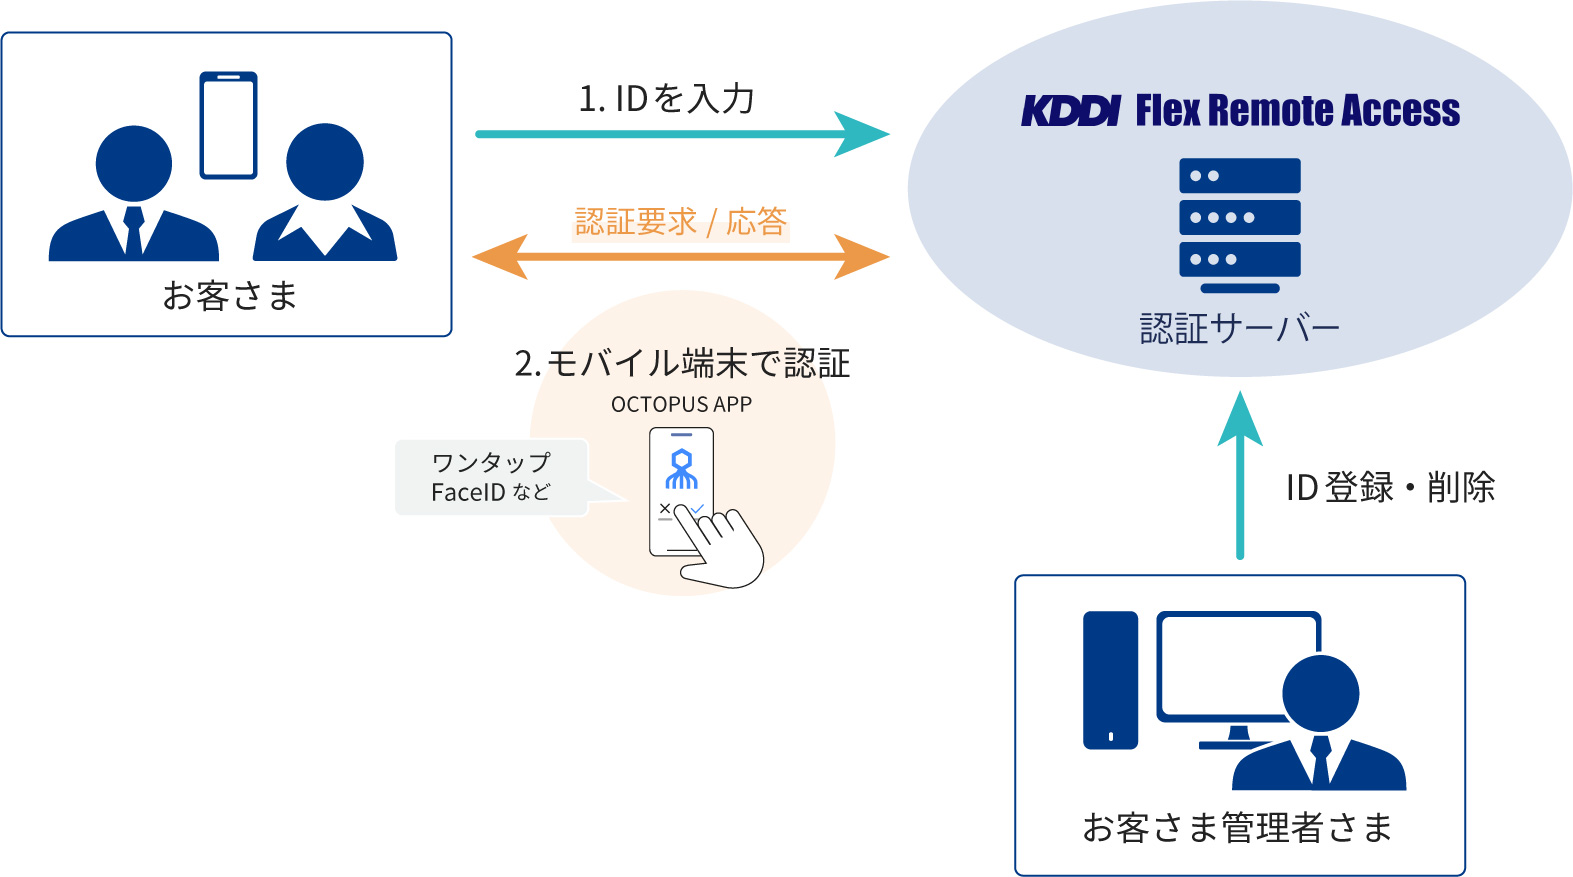 KDDI Flex Remote Accessの機能に「パスワードレス認証」を追加